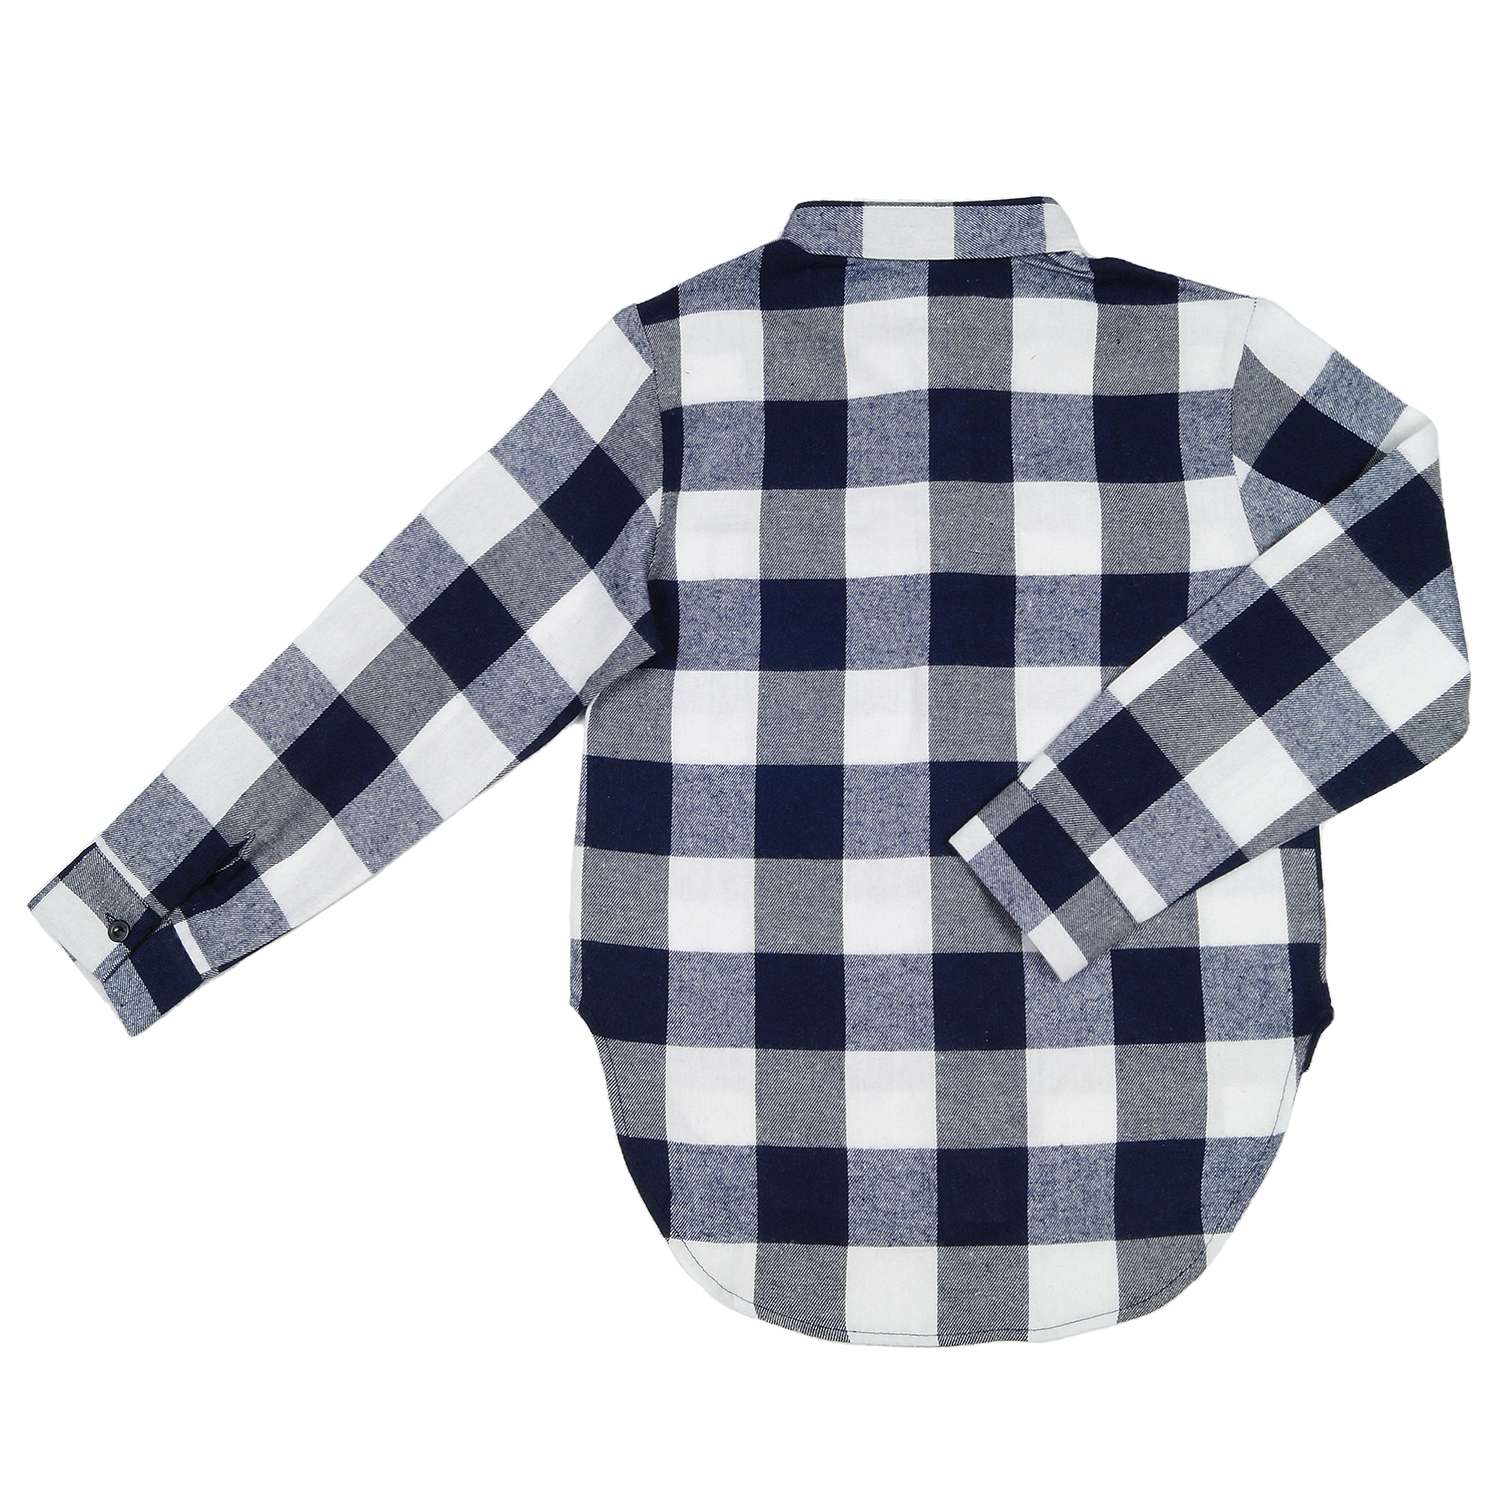 Рубашка Детская Одежда 4101Флн/белый_синий3 - фото 2